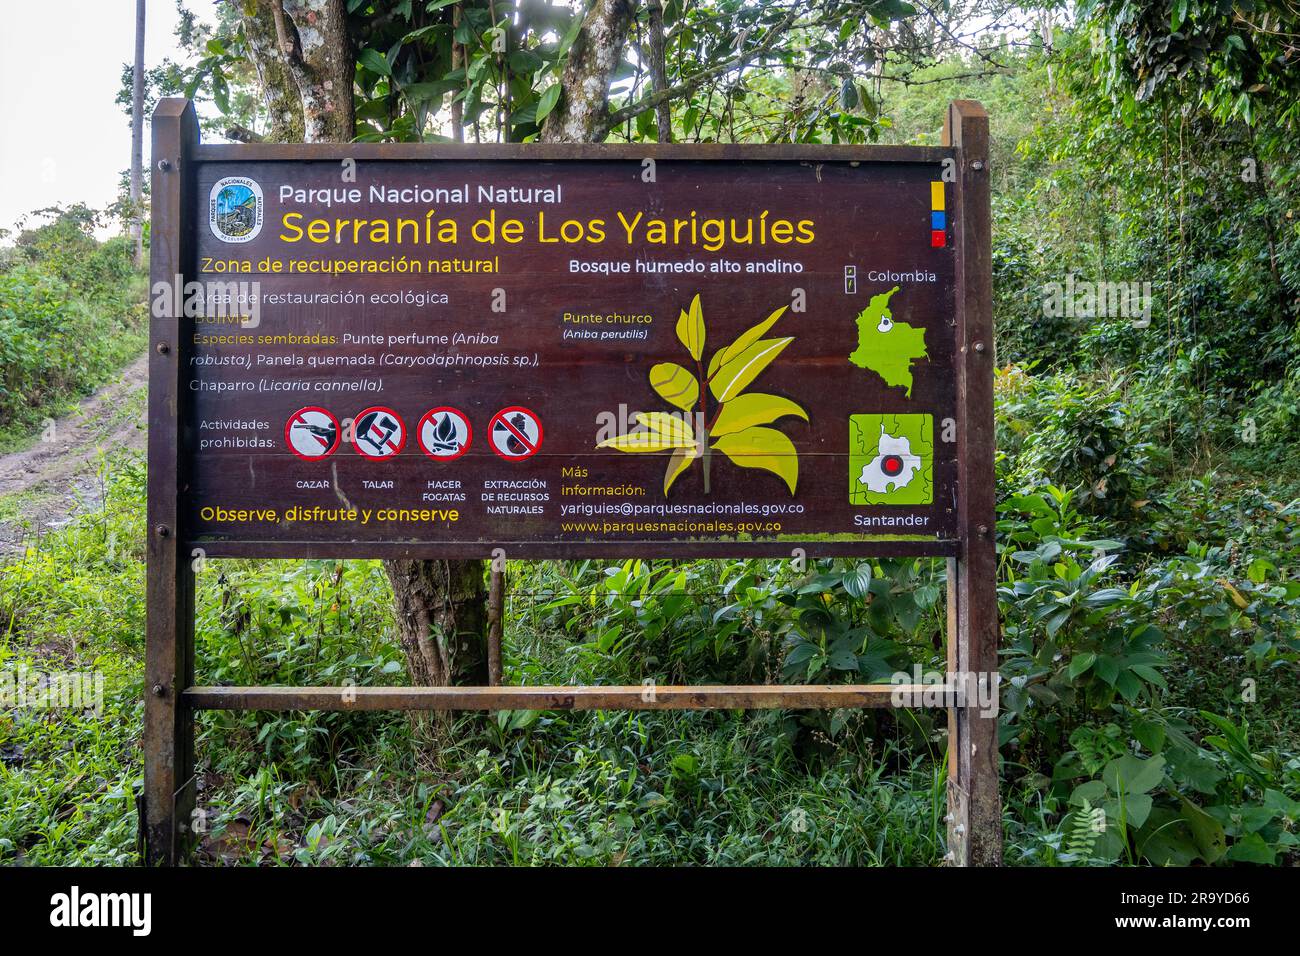 Panneau de signalisation et d'information de Serranía de Los Yariguíes Parque Nacional Natural. Colombie, Amérique du Sud. Banque D'Images